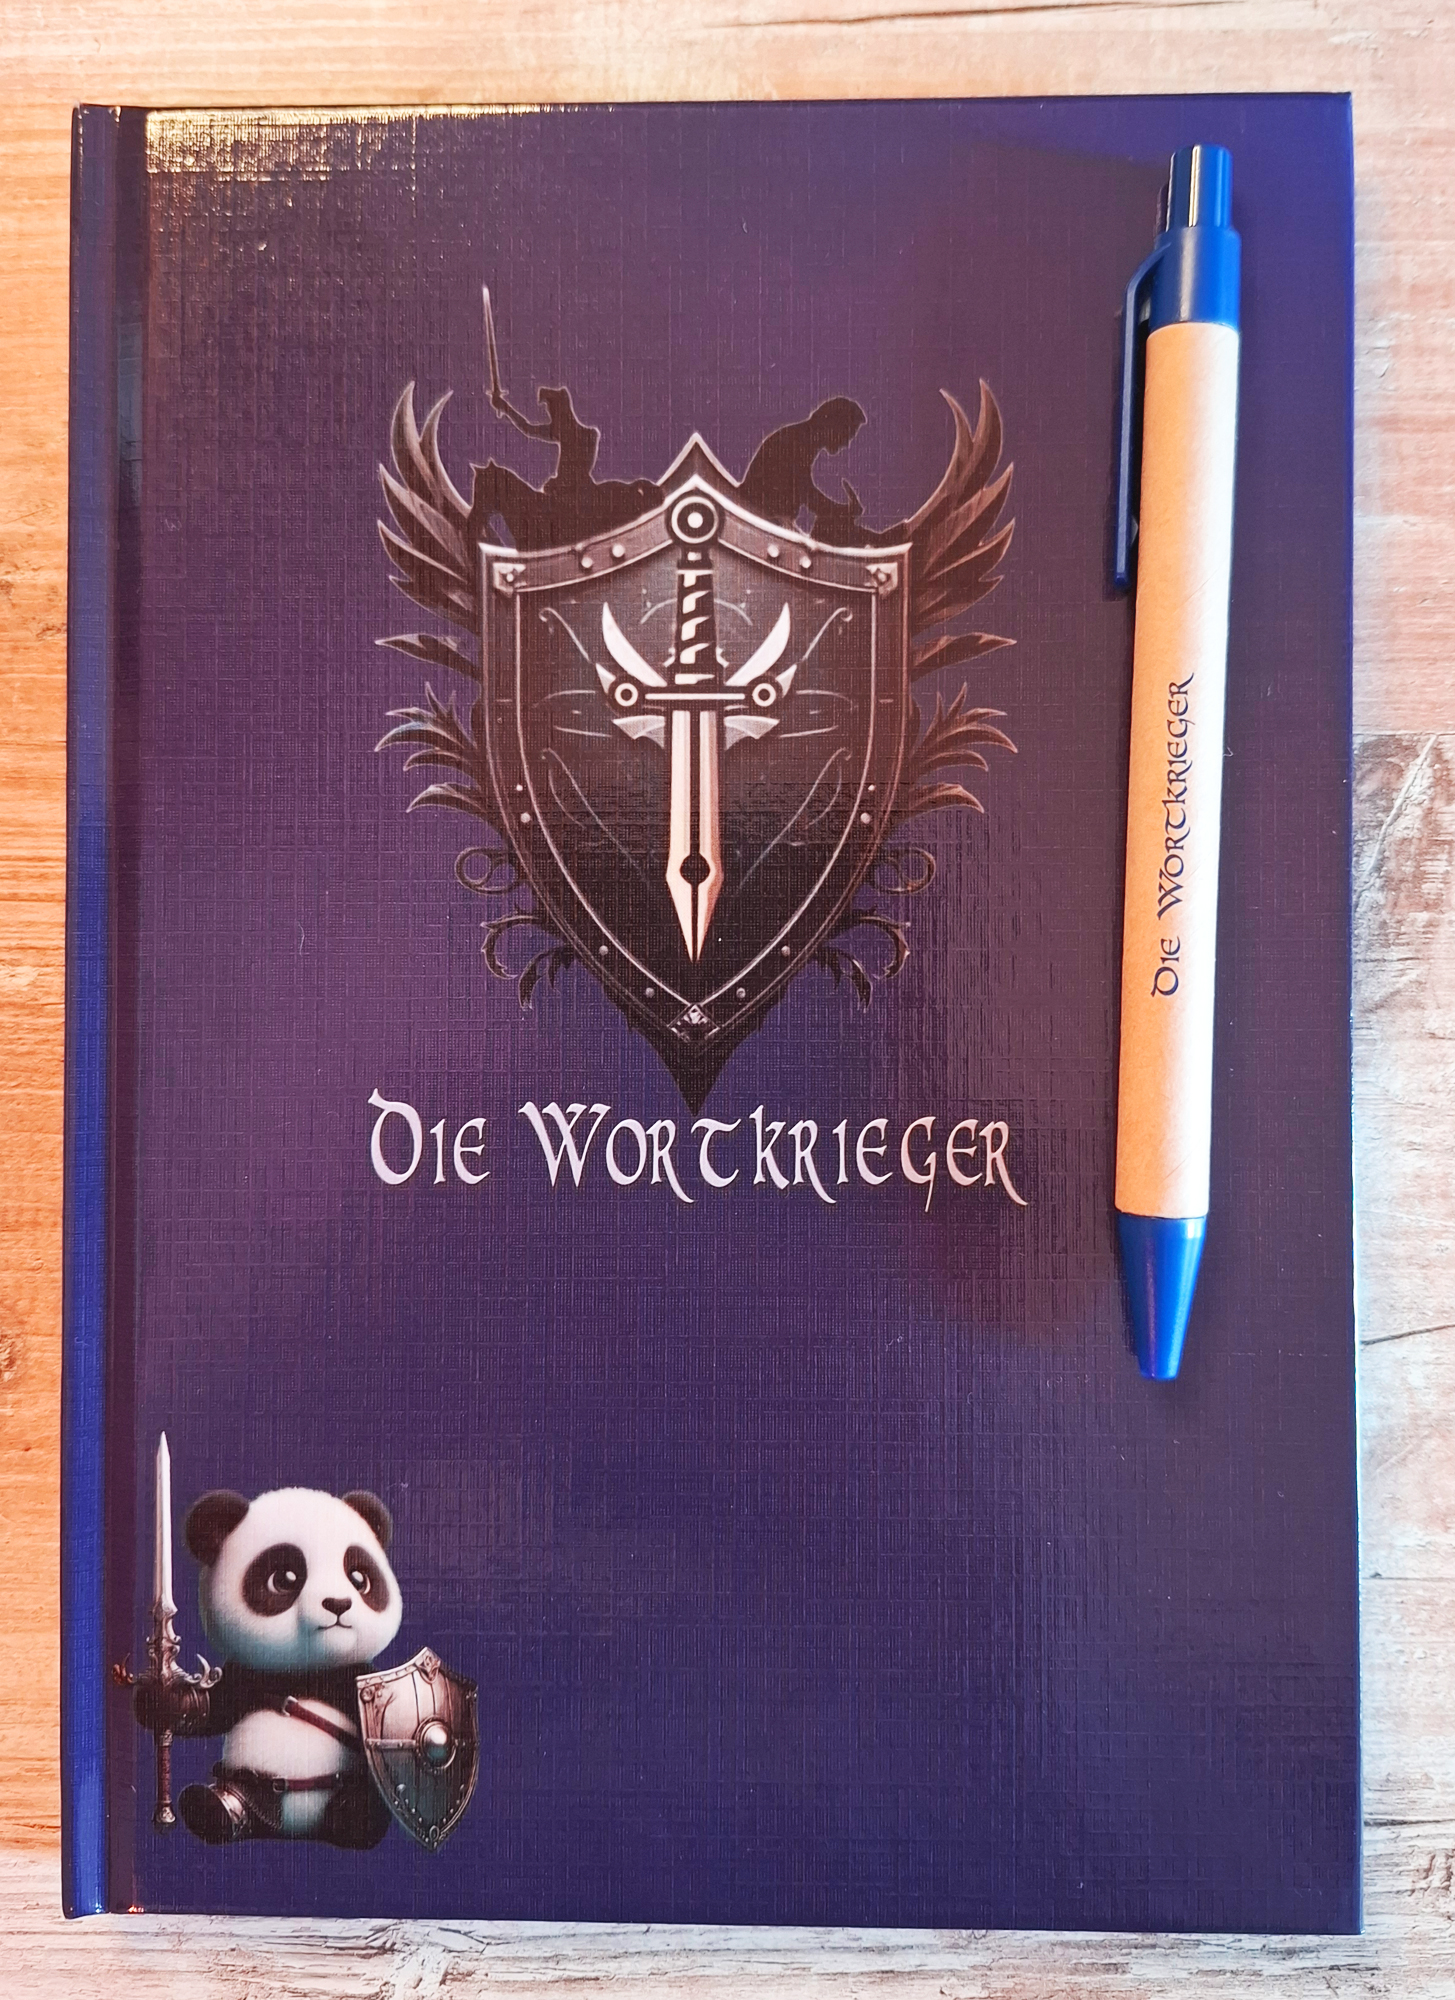 Notizbuch mit Stift mit dem Logo der Wortkrieger, sowie dem Maskottchen, dem Pandabären